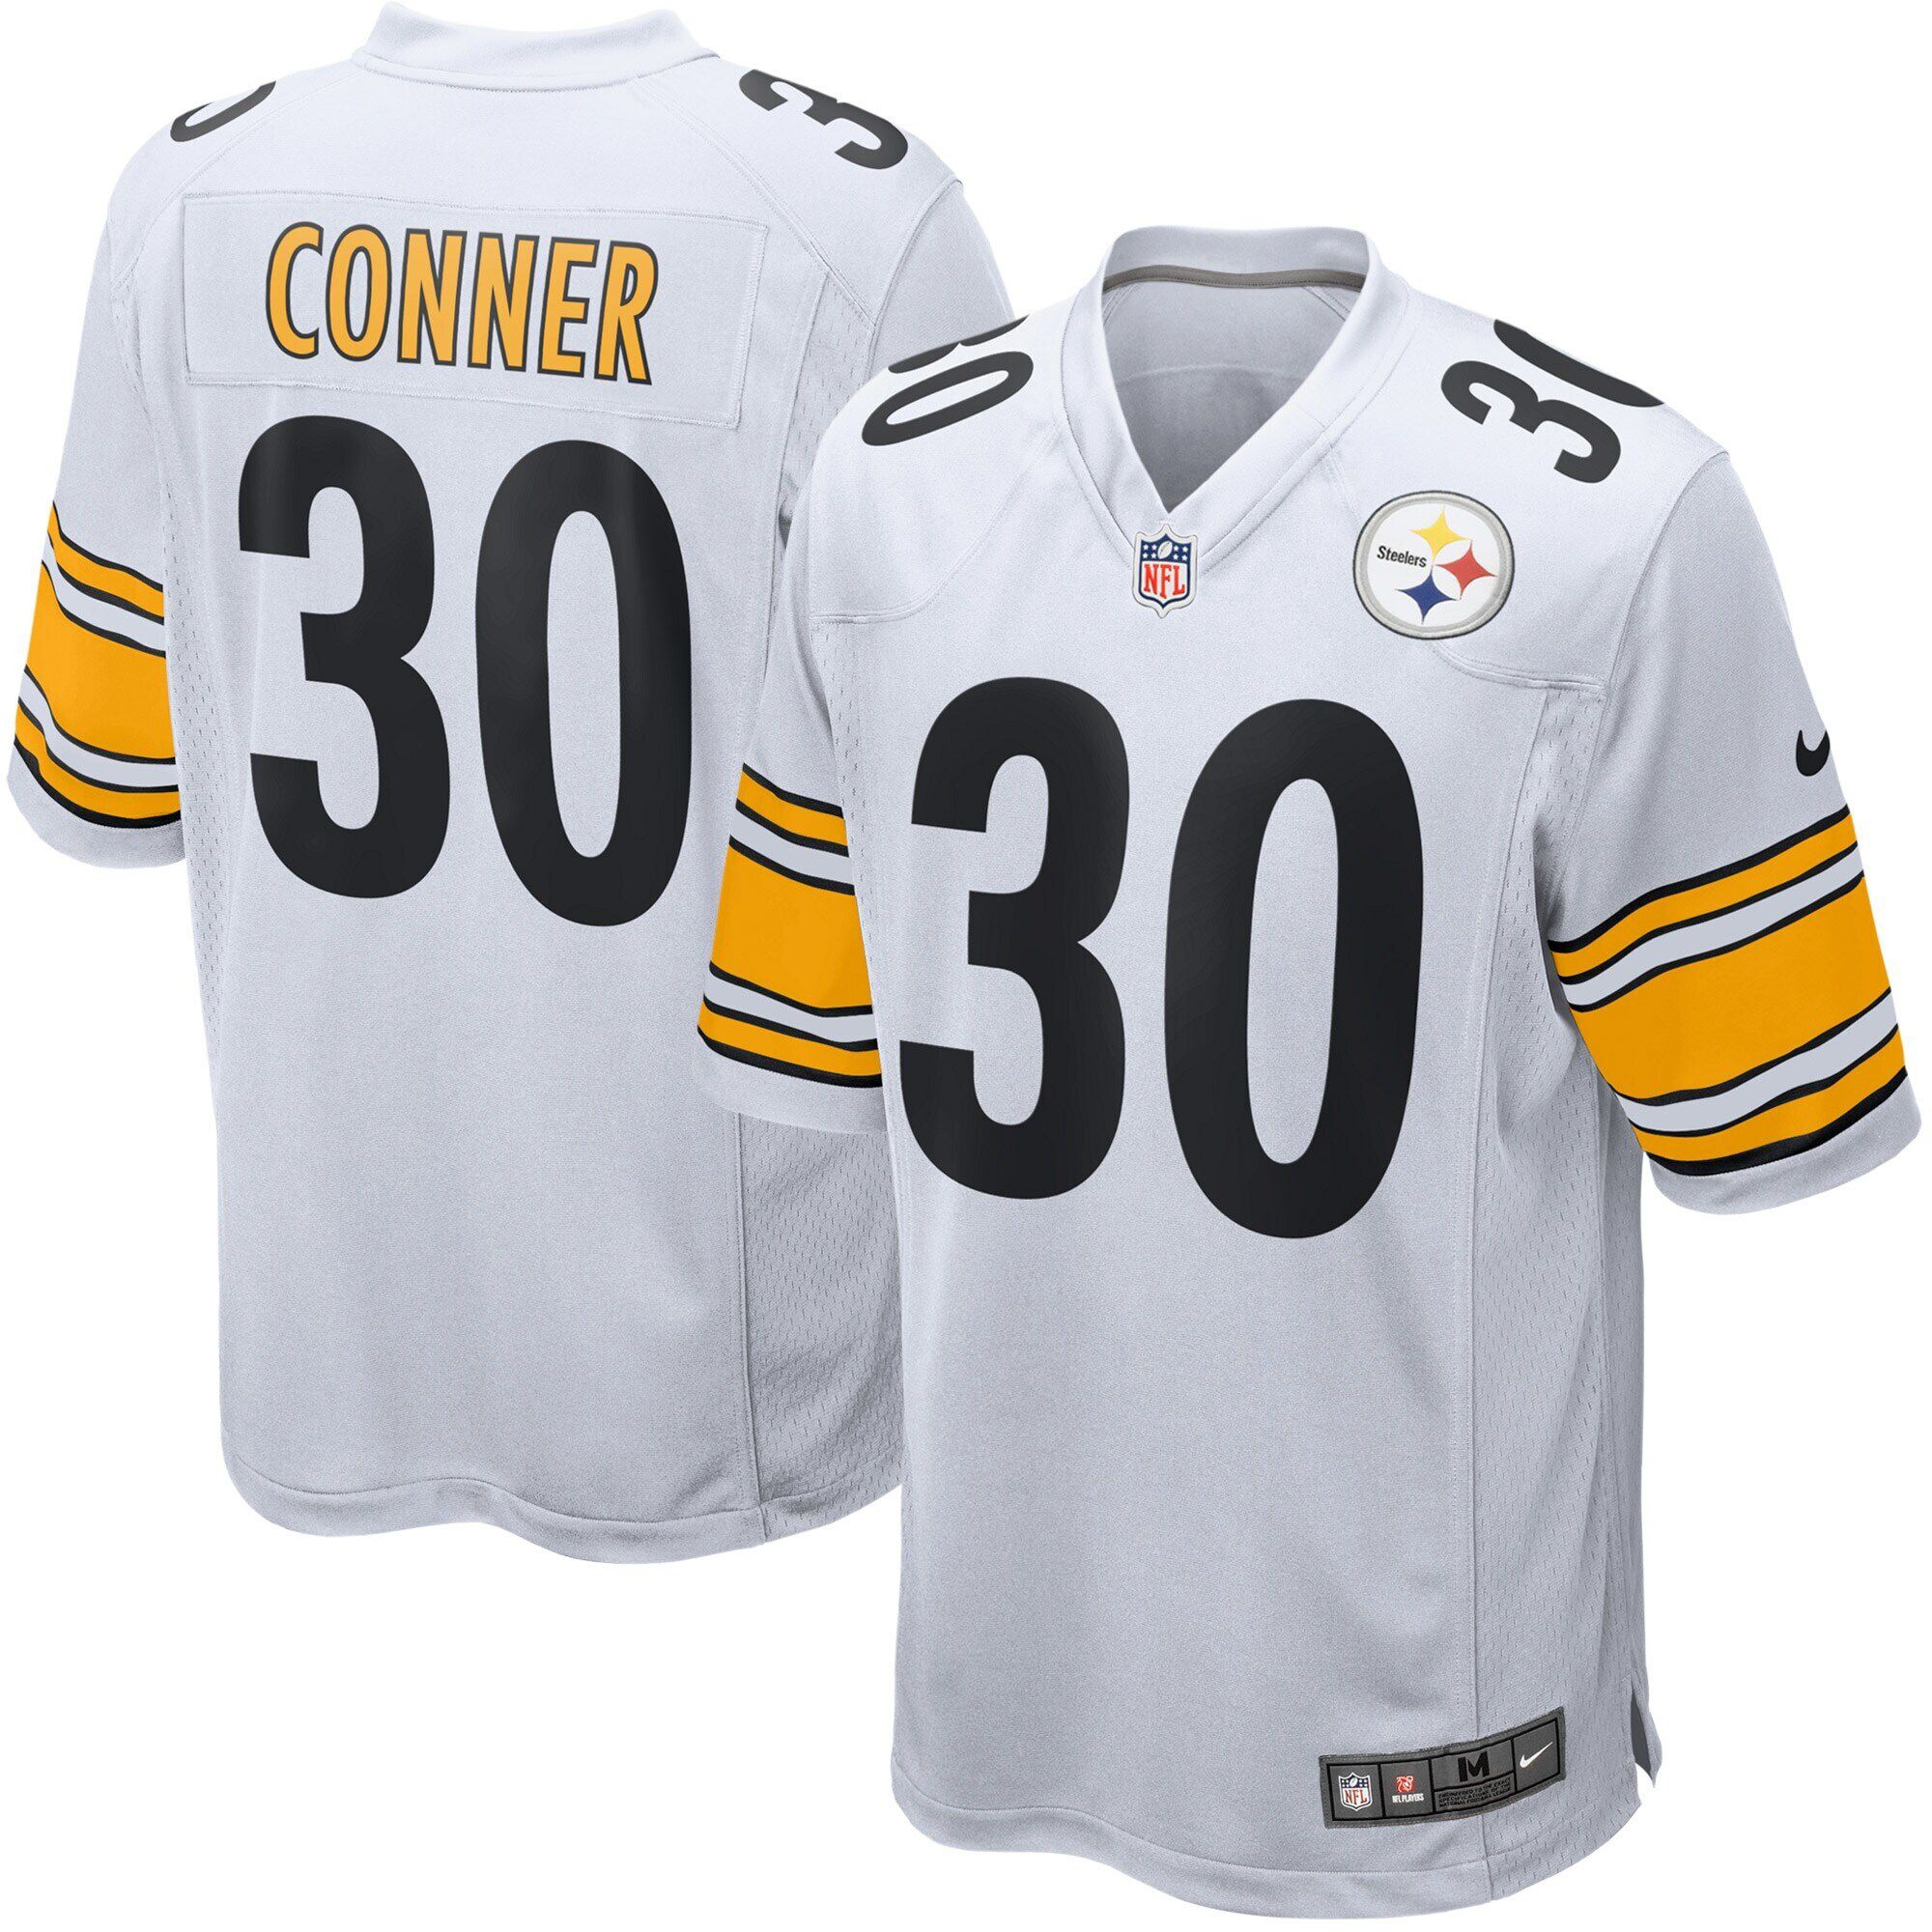 Men Pittsburgh Steelers #30 James Conner Nike White Game NFL Jersey->pittsburgh steelers->NFL Jersey